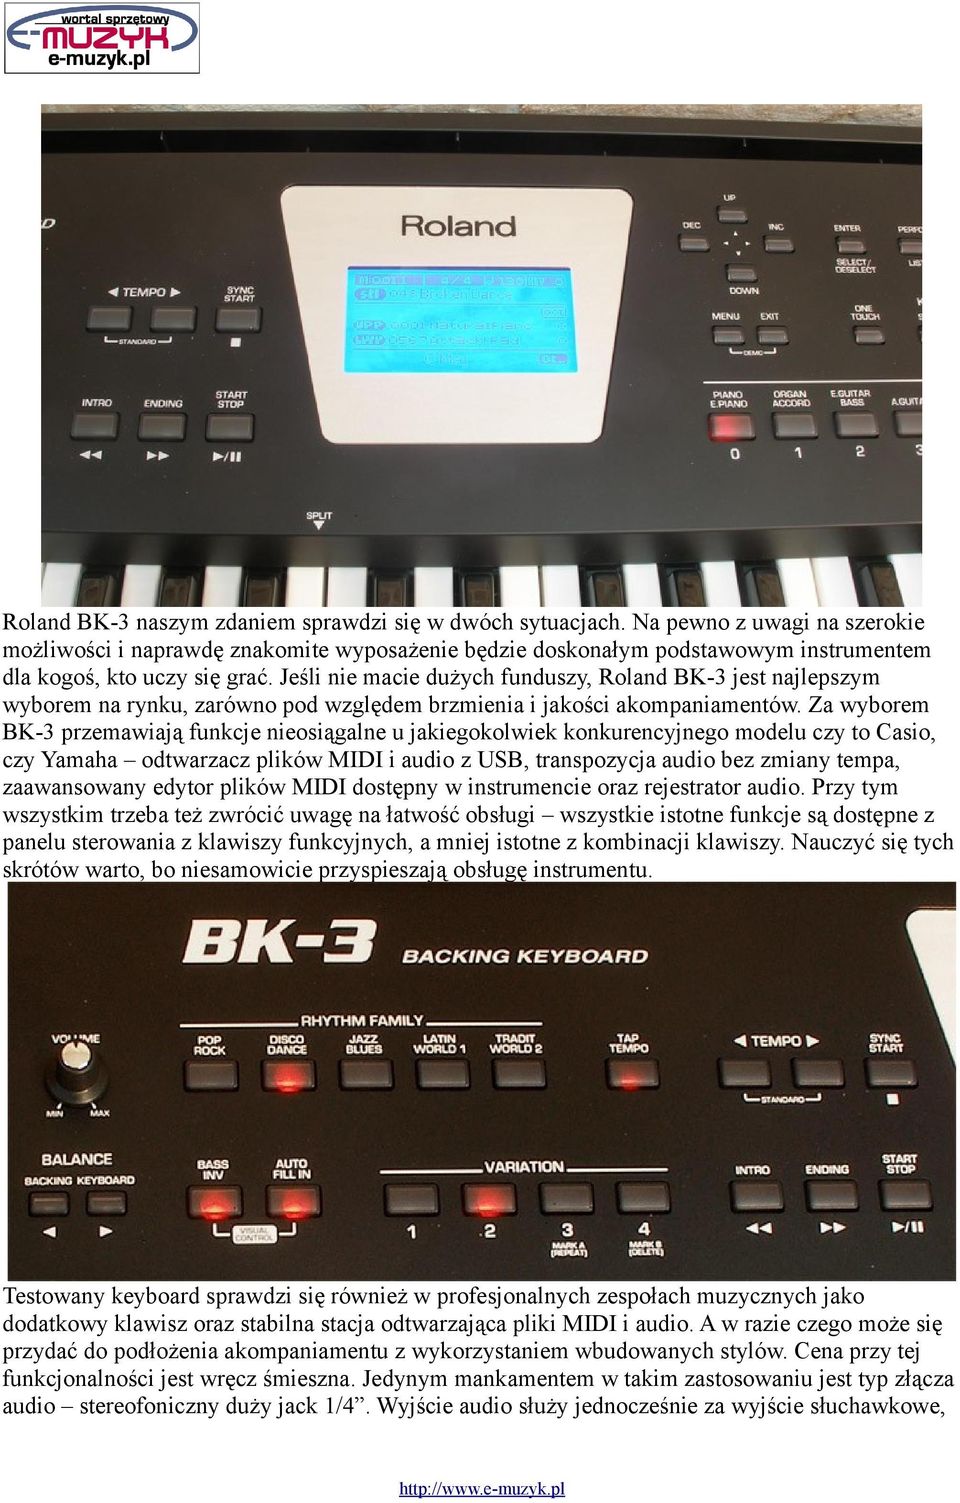 Jeśli nie macie dużych funduszy, Roland BK-3 jest najlepszym wyborem na rynku, zarówno pod względem brzmienia i jakości akompaniamentów.